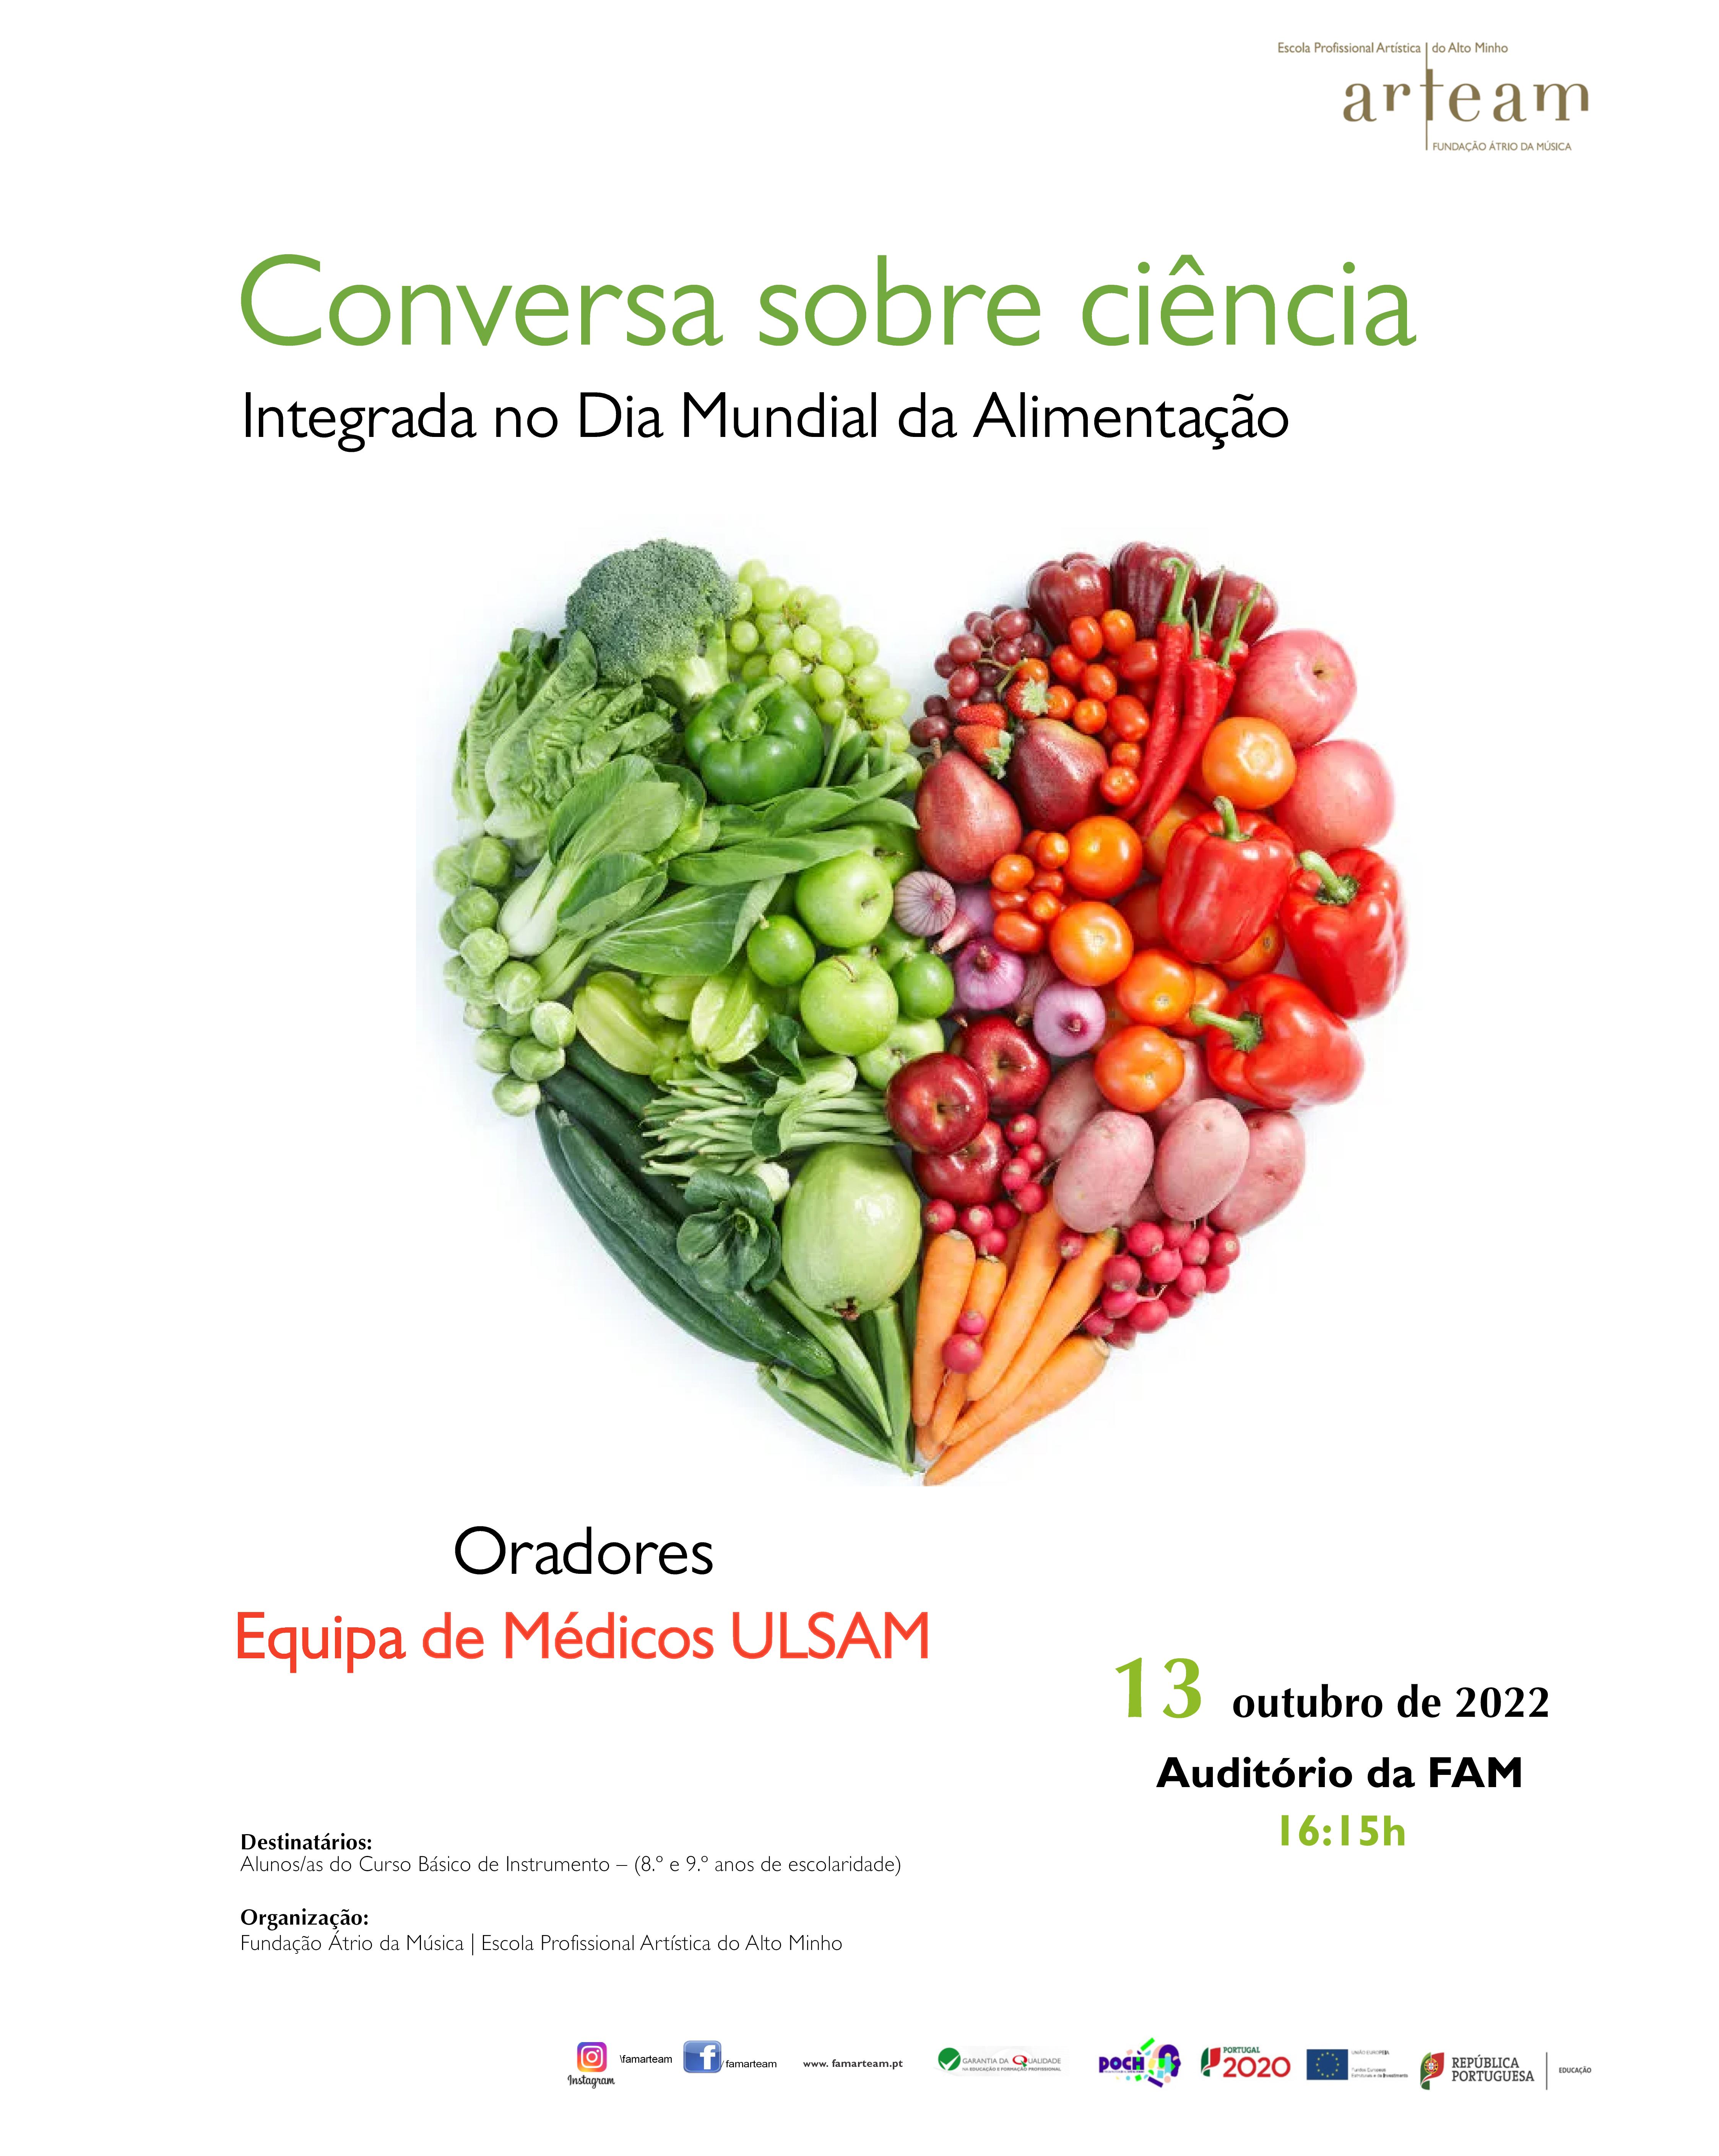 Conversa sobre Ciência integrada no dia Mundial da Alimentação